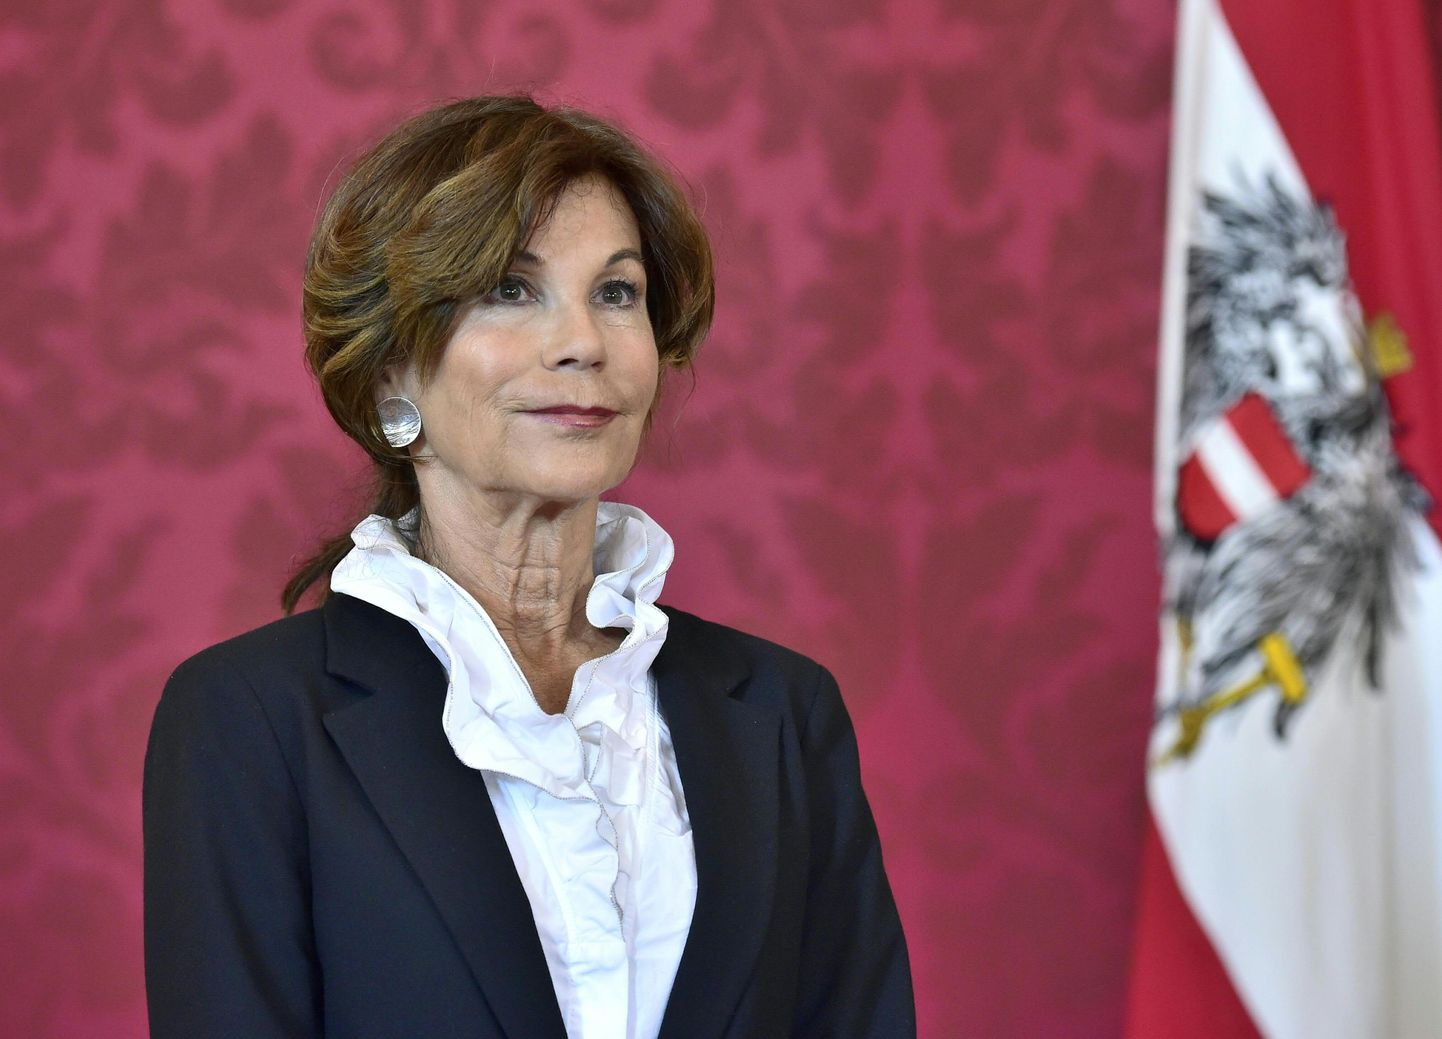 Austria põhiseaduskohtu esinaine Brigitte Bierlein neljapäeval Viinis presidendipalees pärast seda, kui president Alexander Van der Bellen oli ta ajutiseks kantsleriks nimetanud.